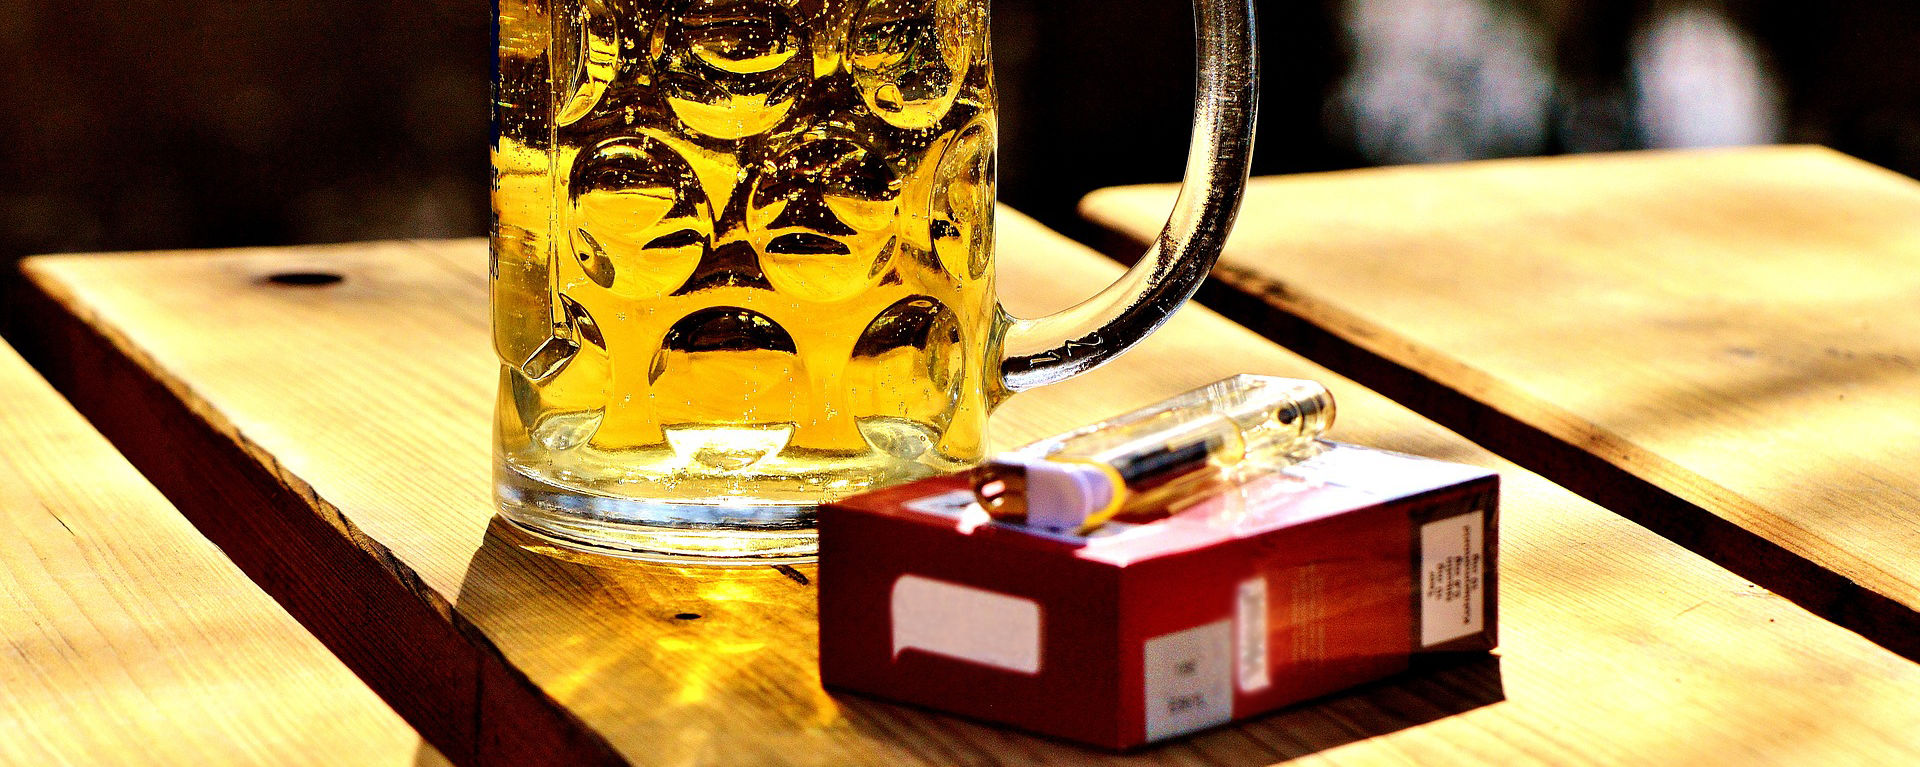 Glas Bier und Zigaretten am Tisch